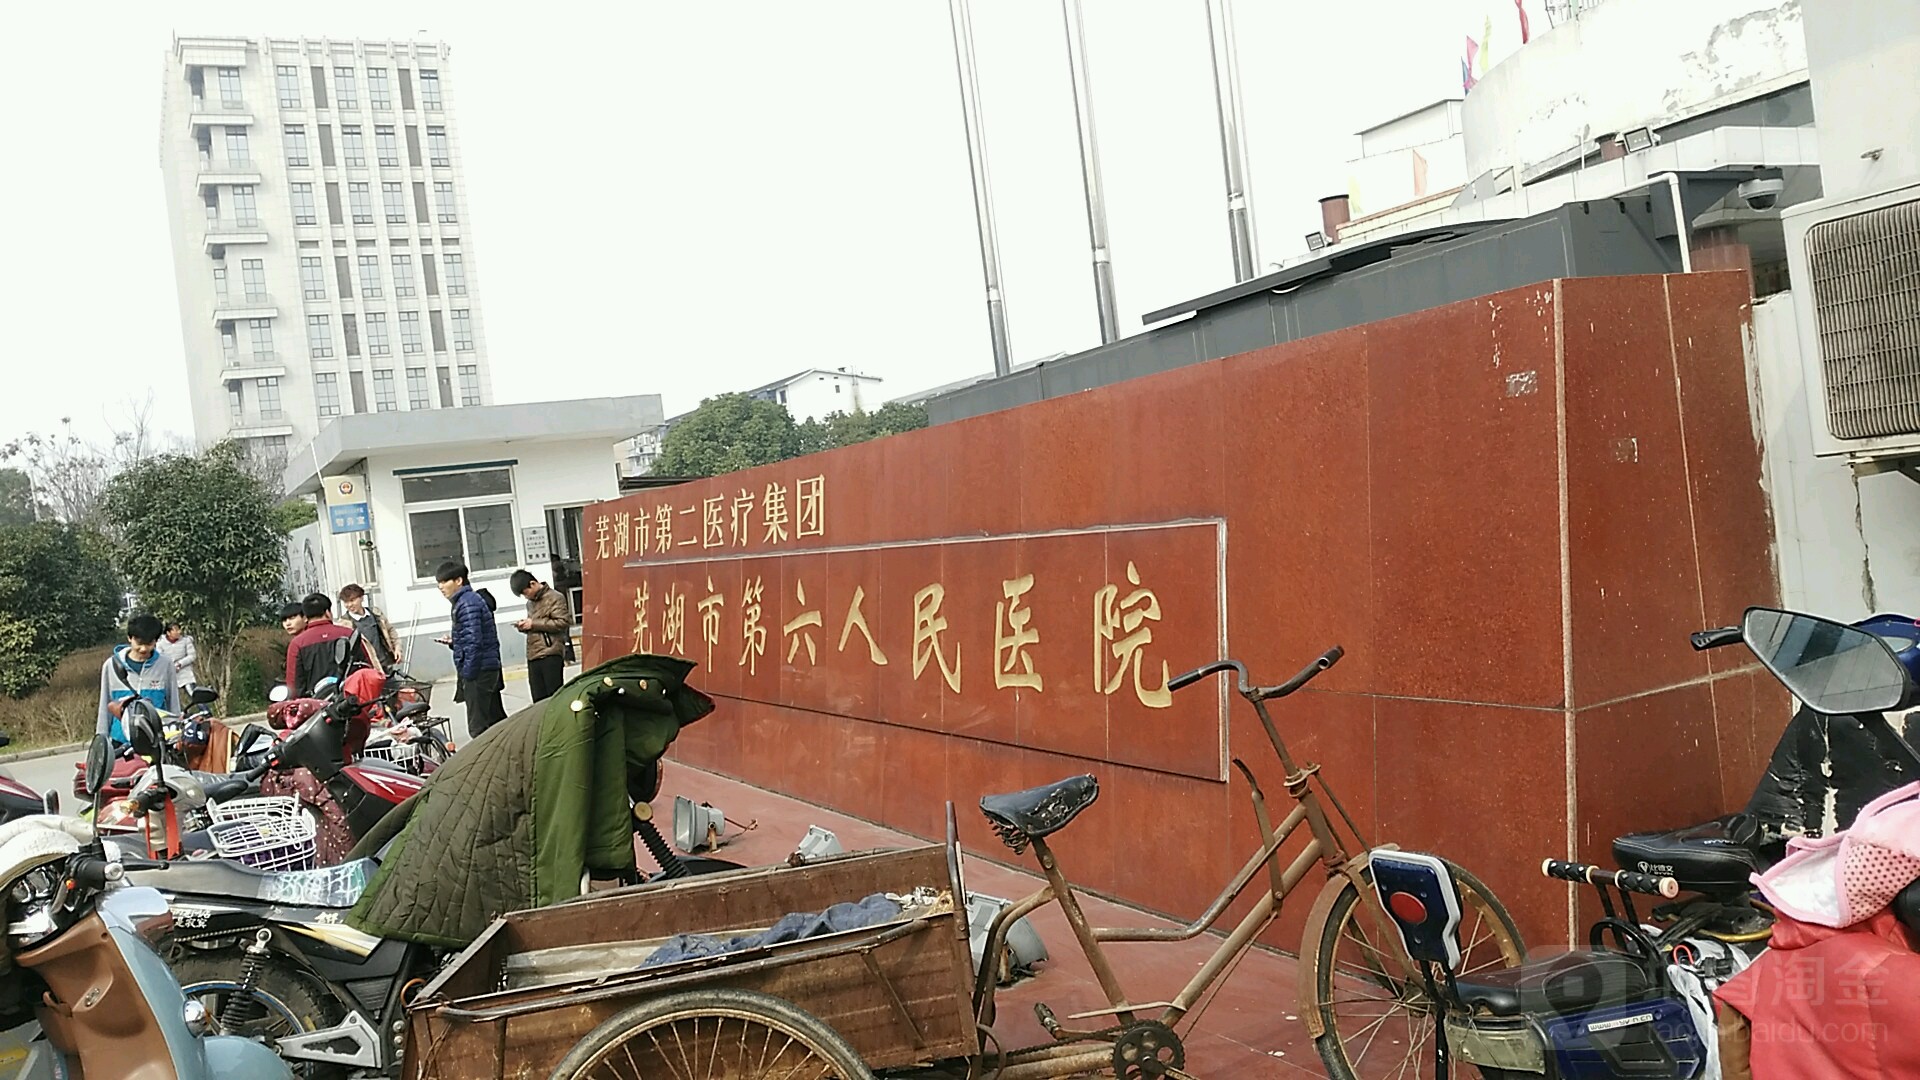 安徽省芜湖市经济技术开发区越秀路12号